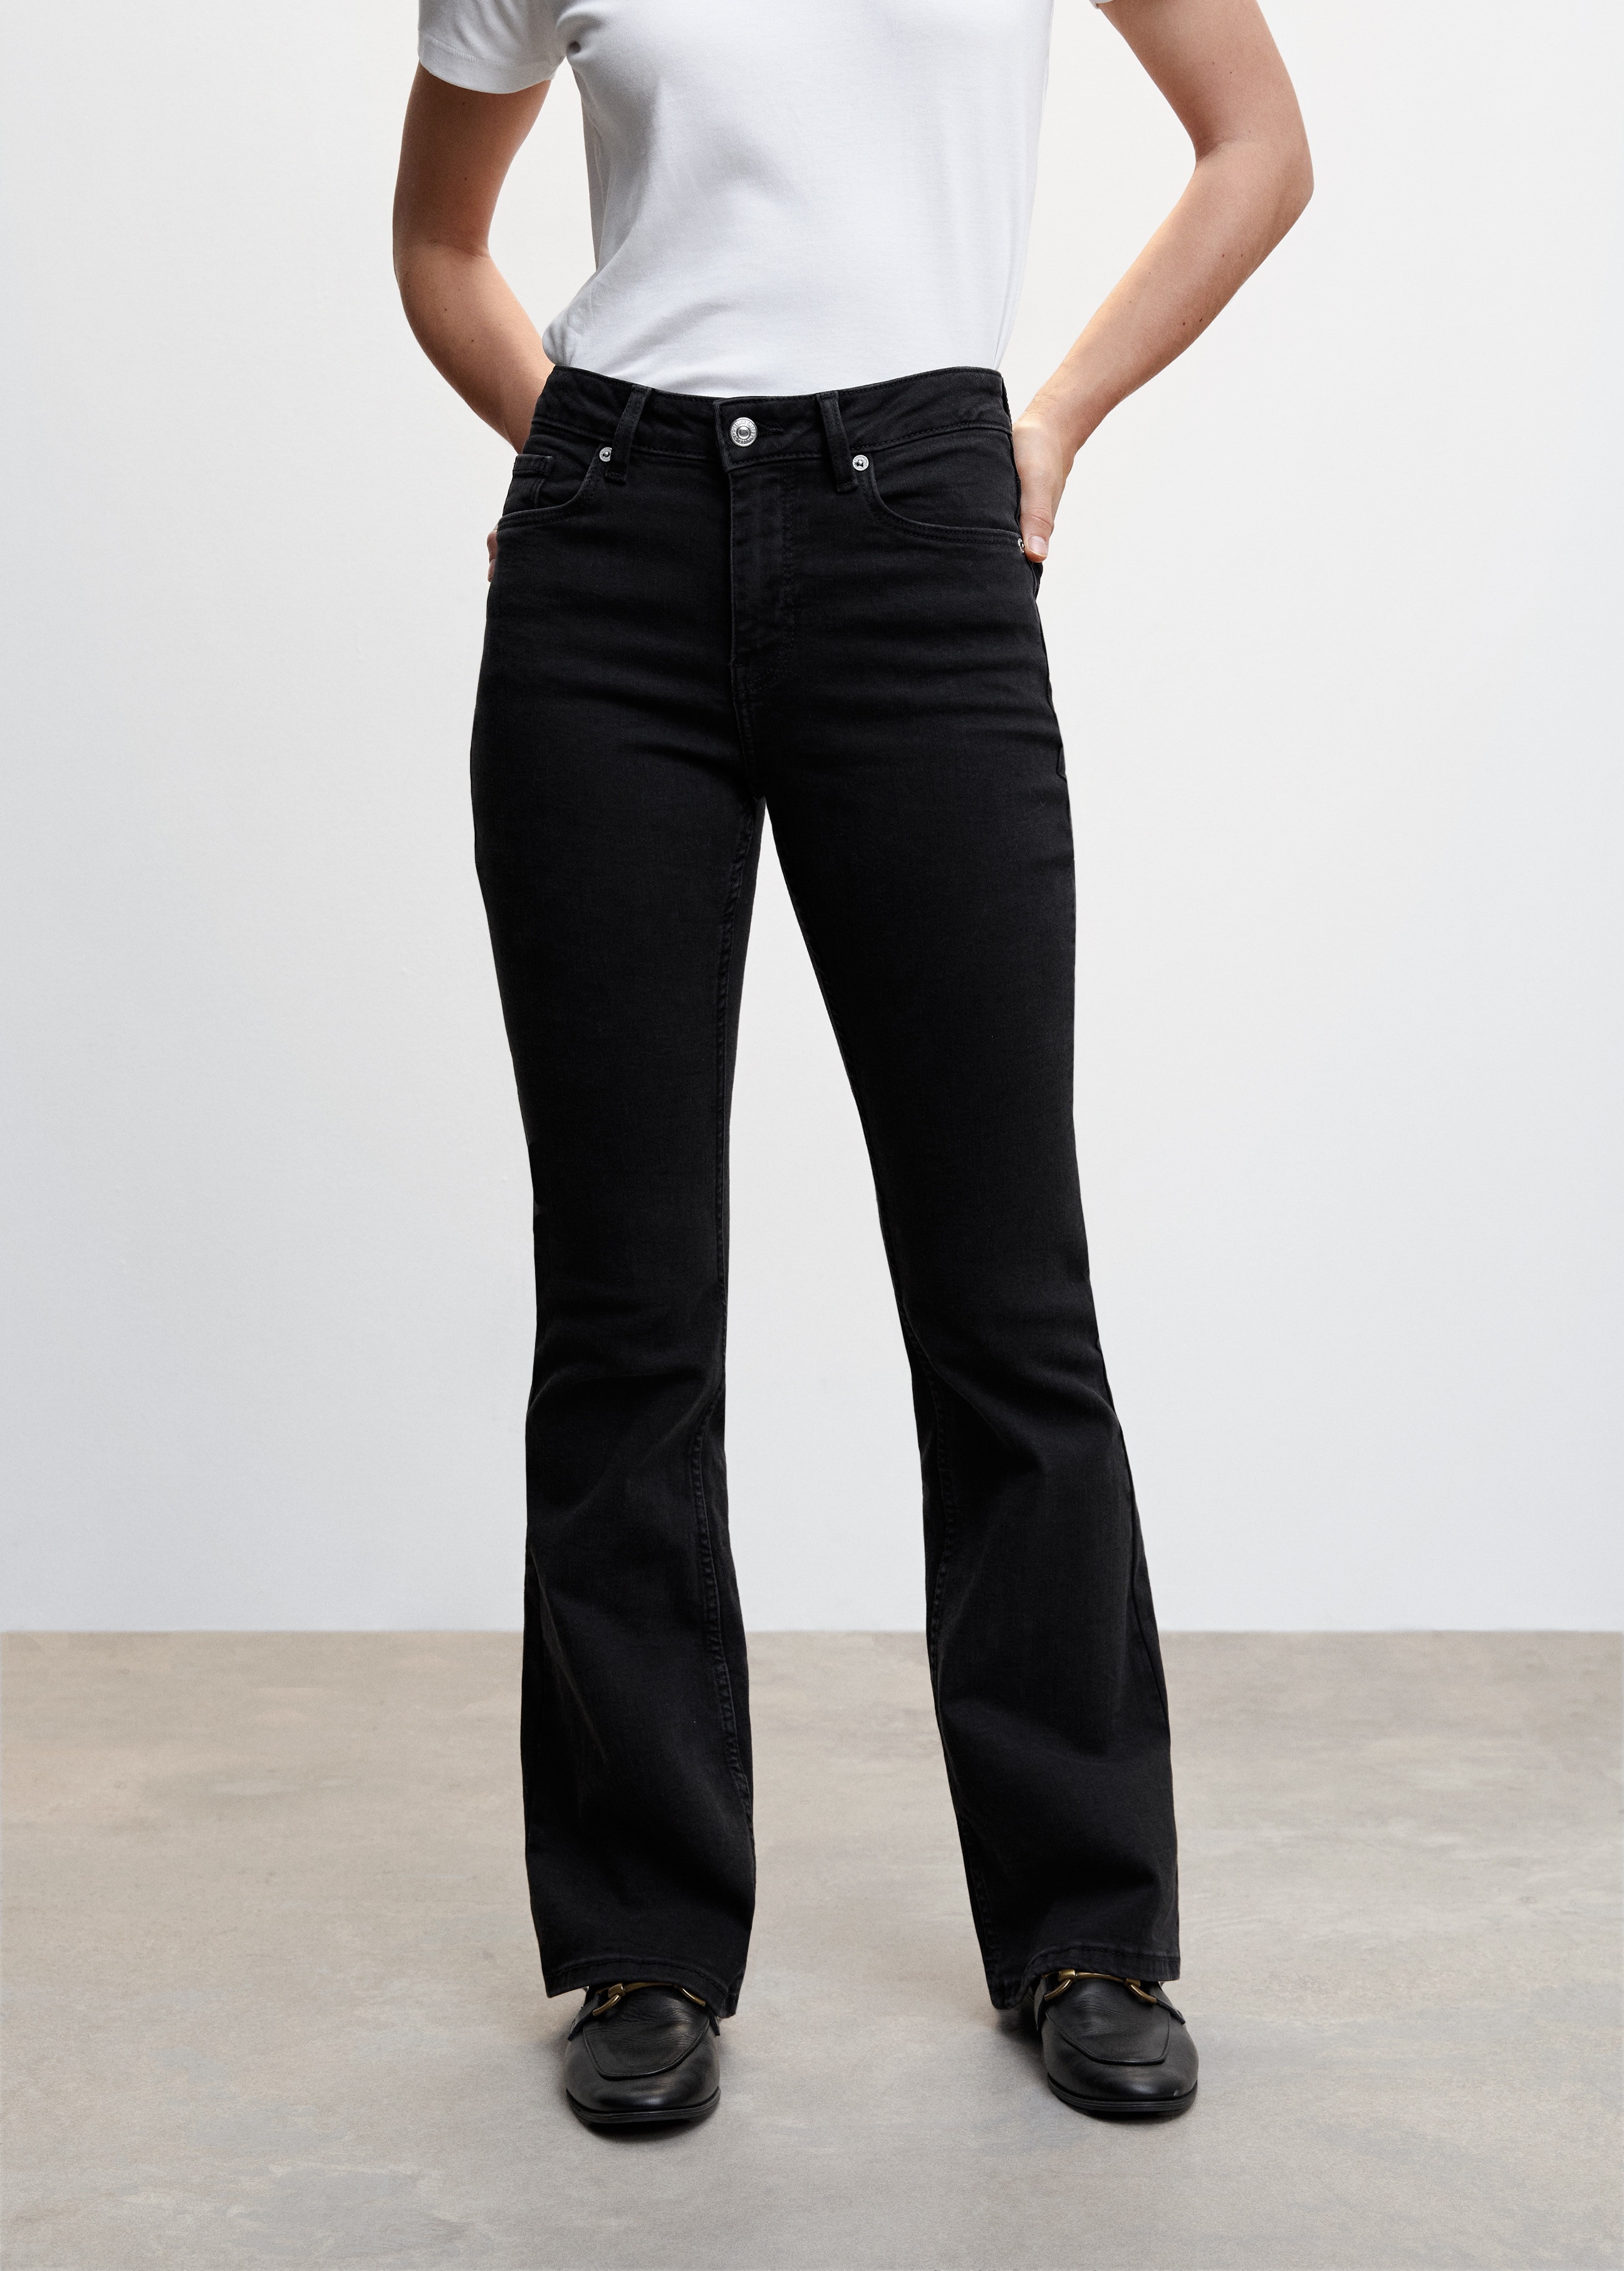 Jeans flare com cintura de altura média - Plano médio